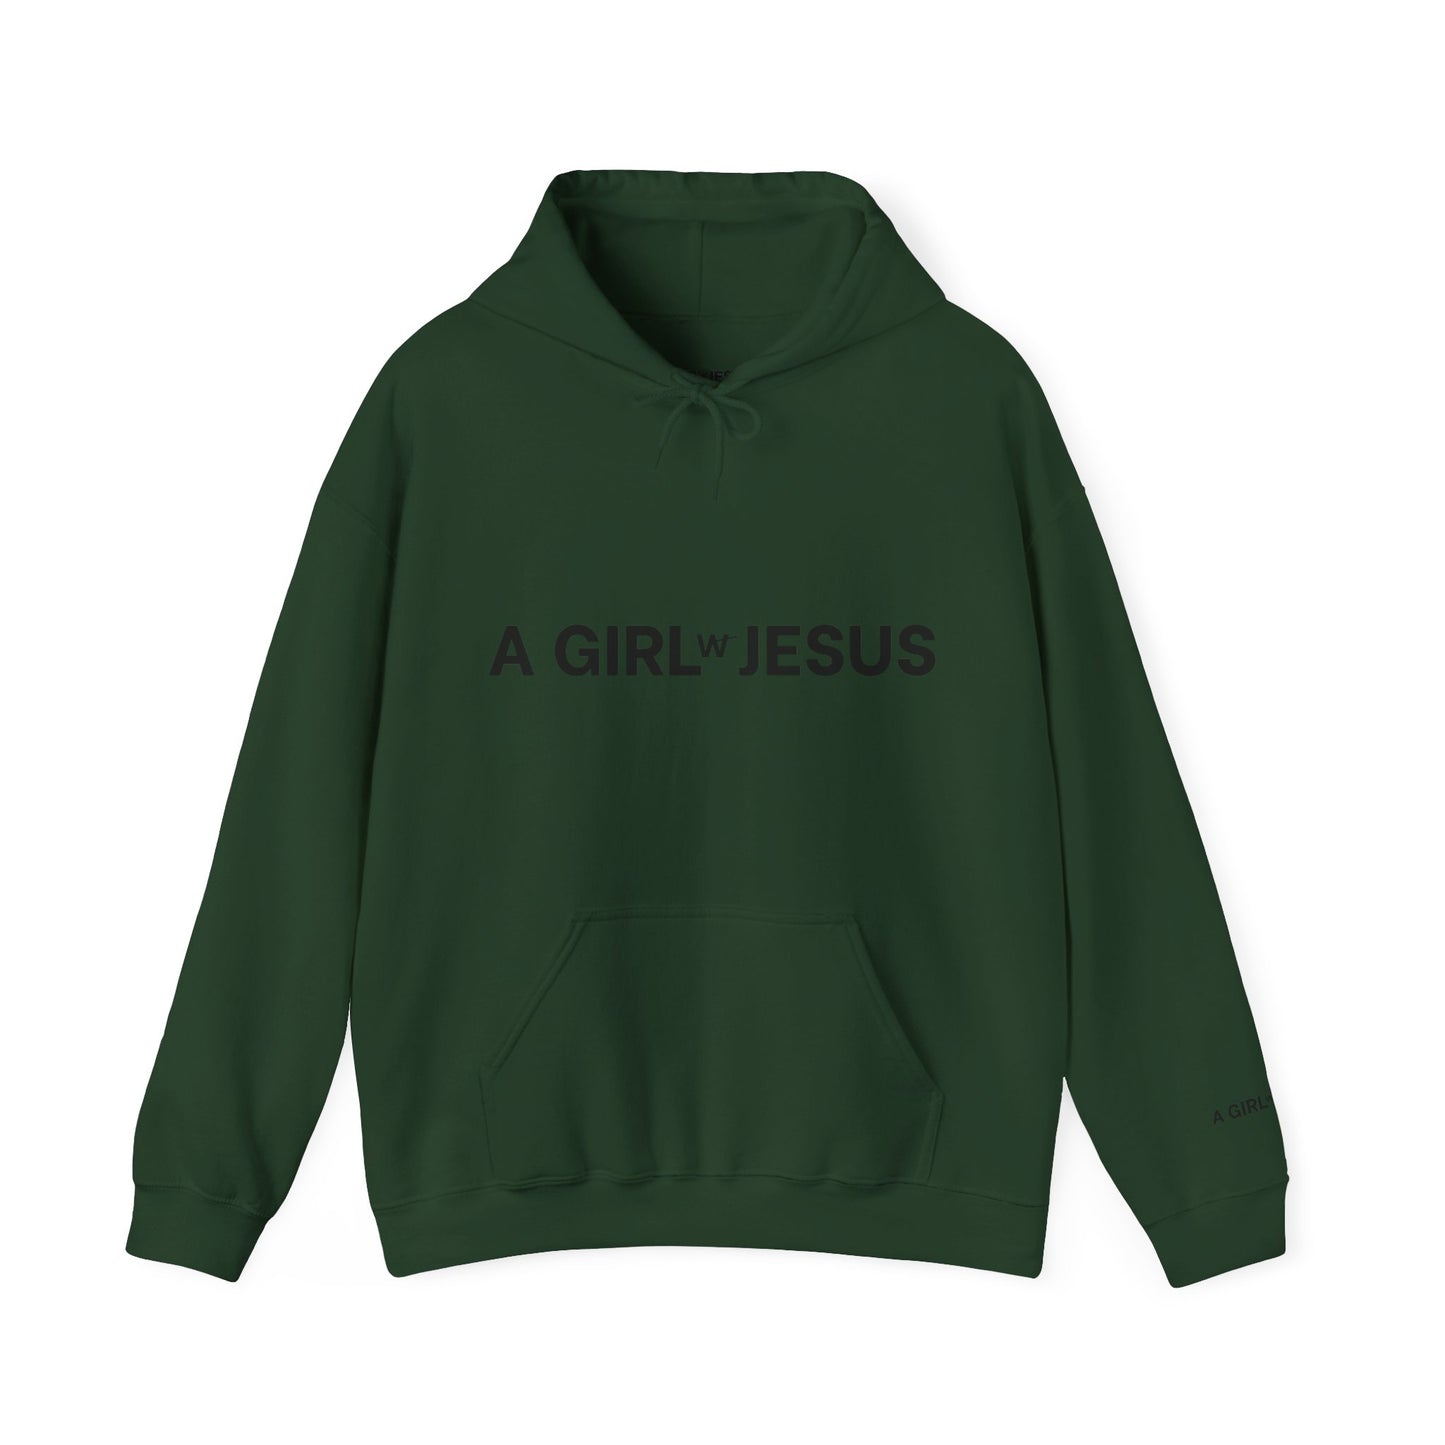 A GIRL w/ JESUS HOODIE